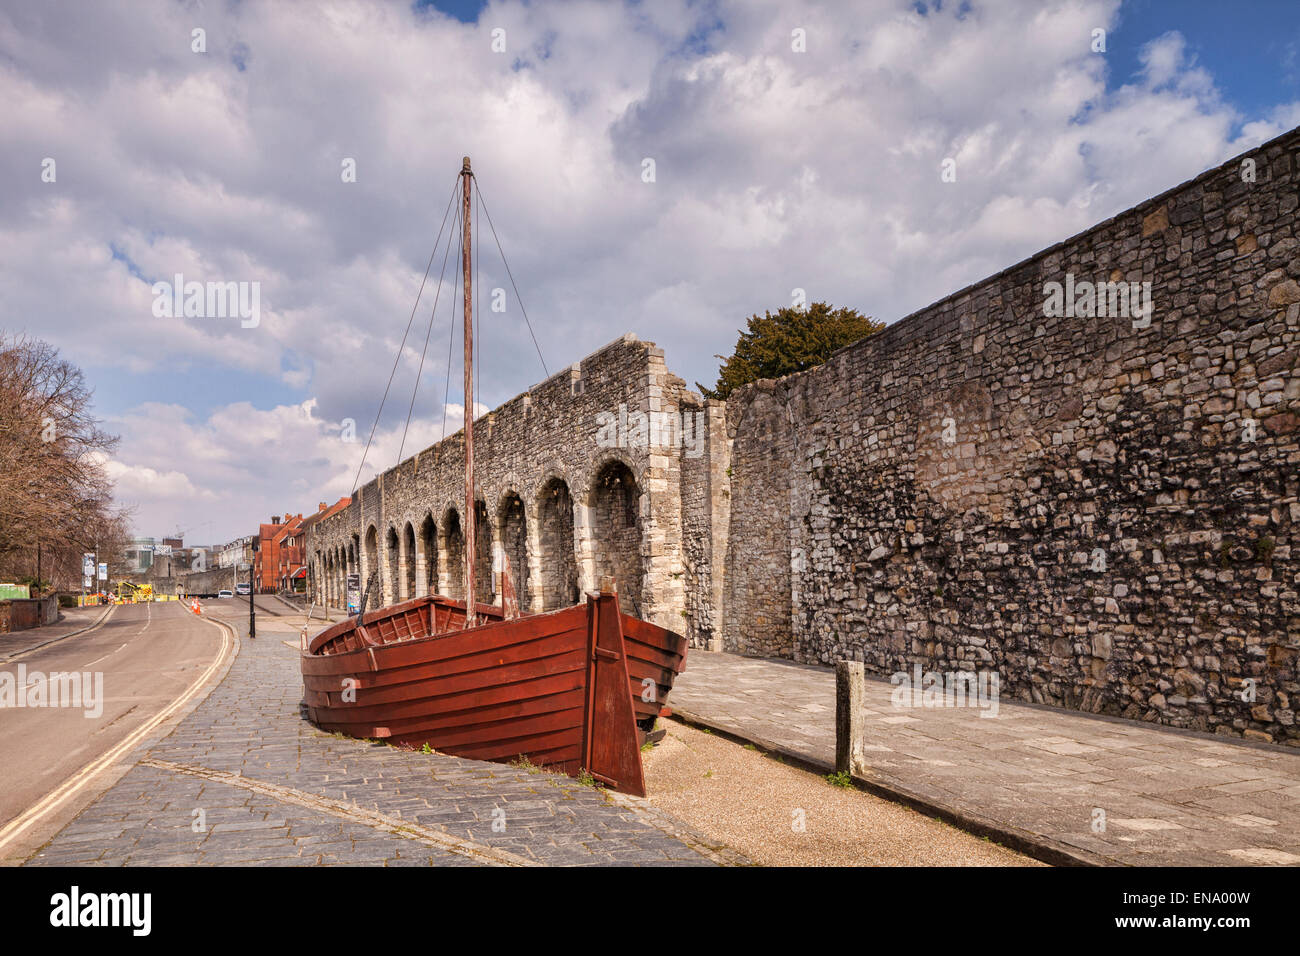 Une partie des anciens murs de la ville de Southampton. Un bateau a été placé pour montrer où la mer était à l'époque médiévale. Southampton, Banque D'Images